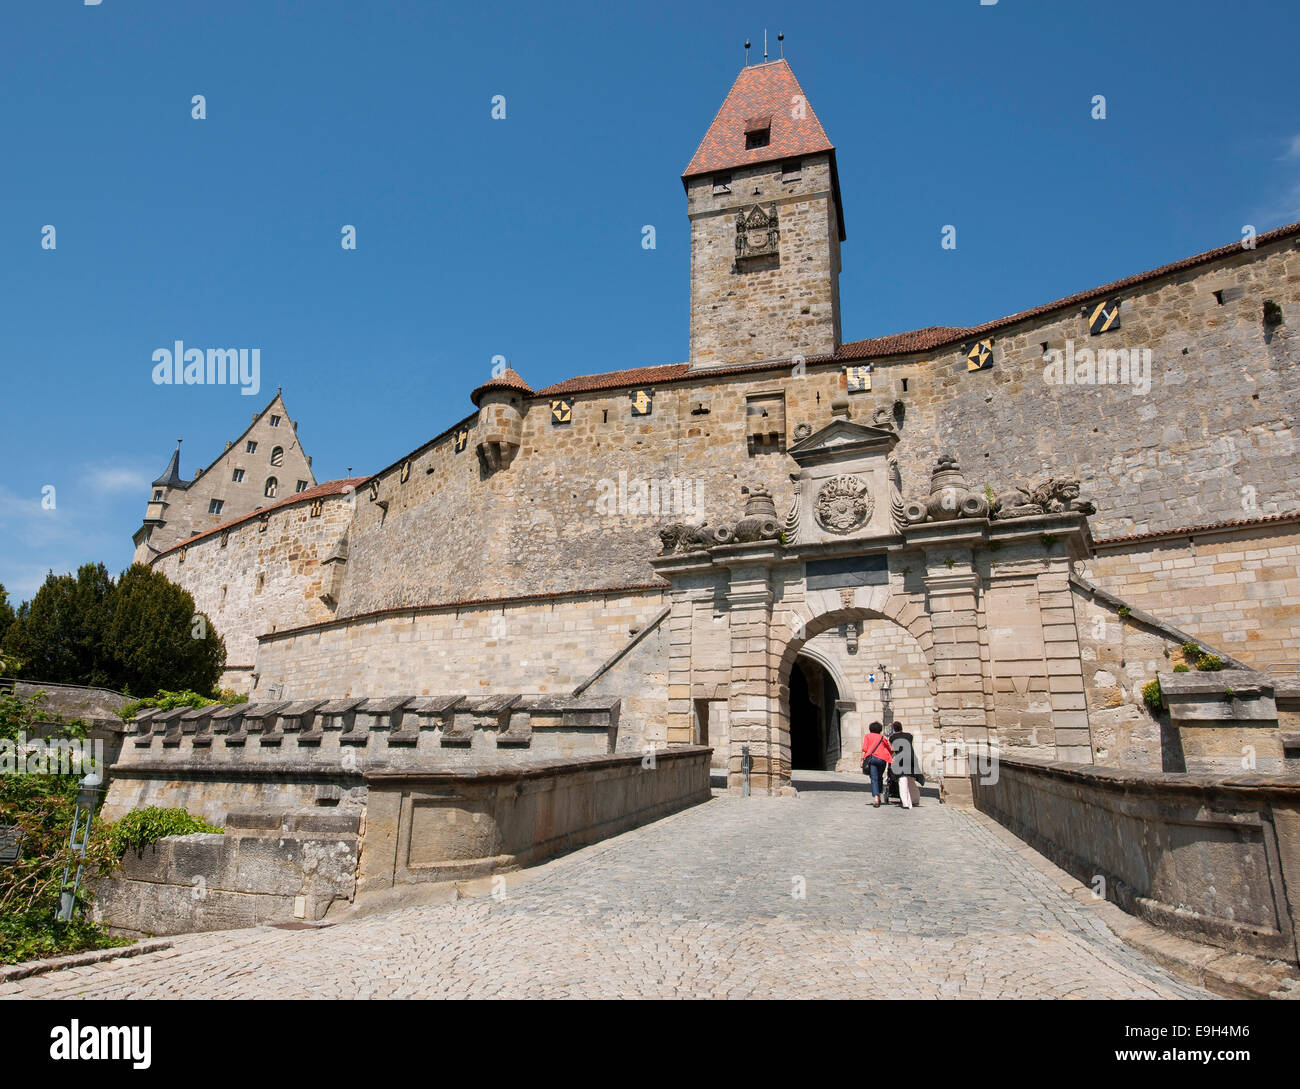 Eingangstor und Bulgaren Turm, Veste Coburg oder Festung Coburg, Coburg, Upper Franconia, Bayern, Deutschland Stockfoto